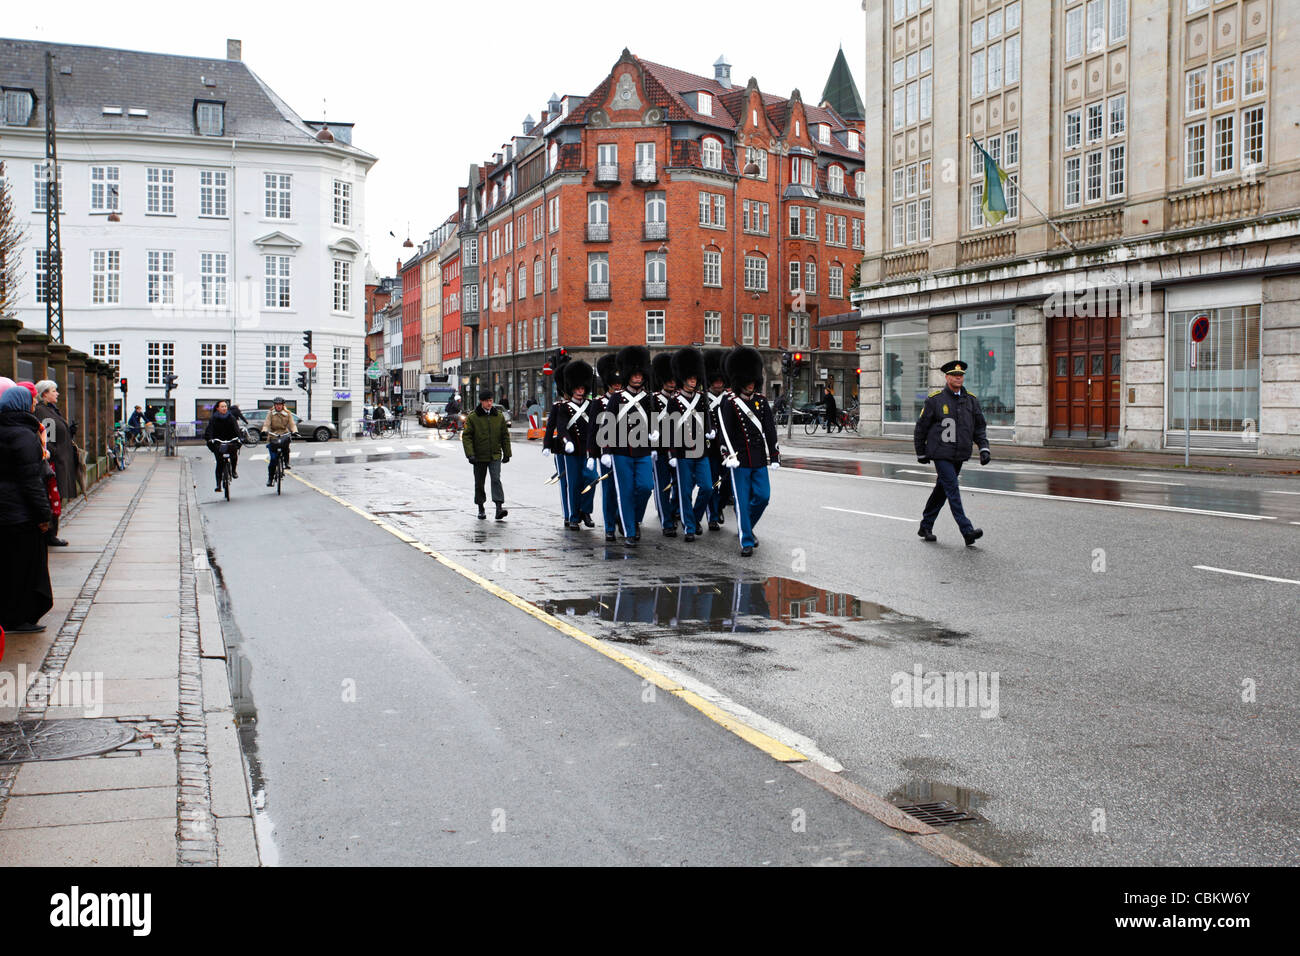 La Garde royale de Copenhague Danemark Banque D'Images